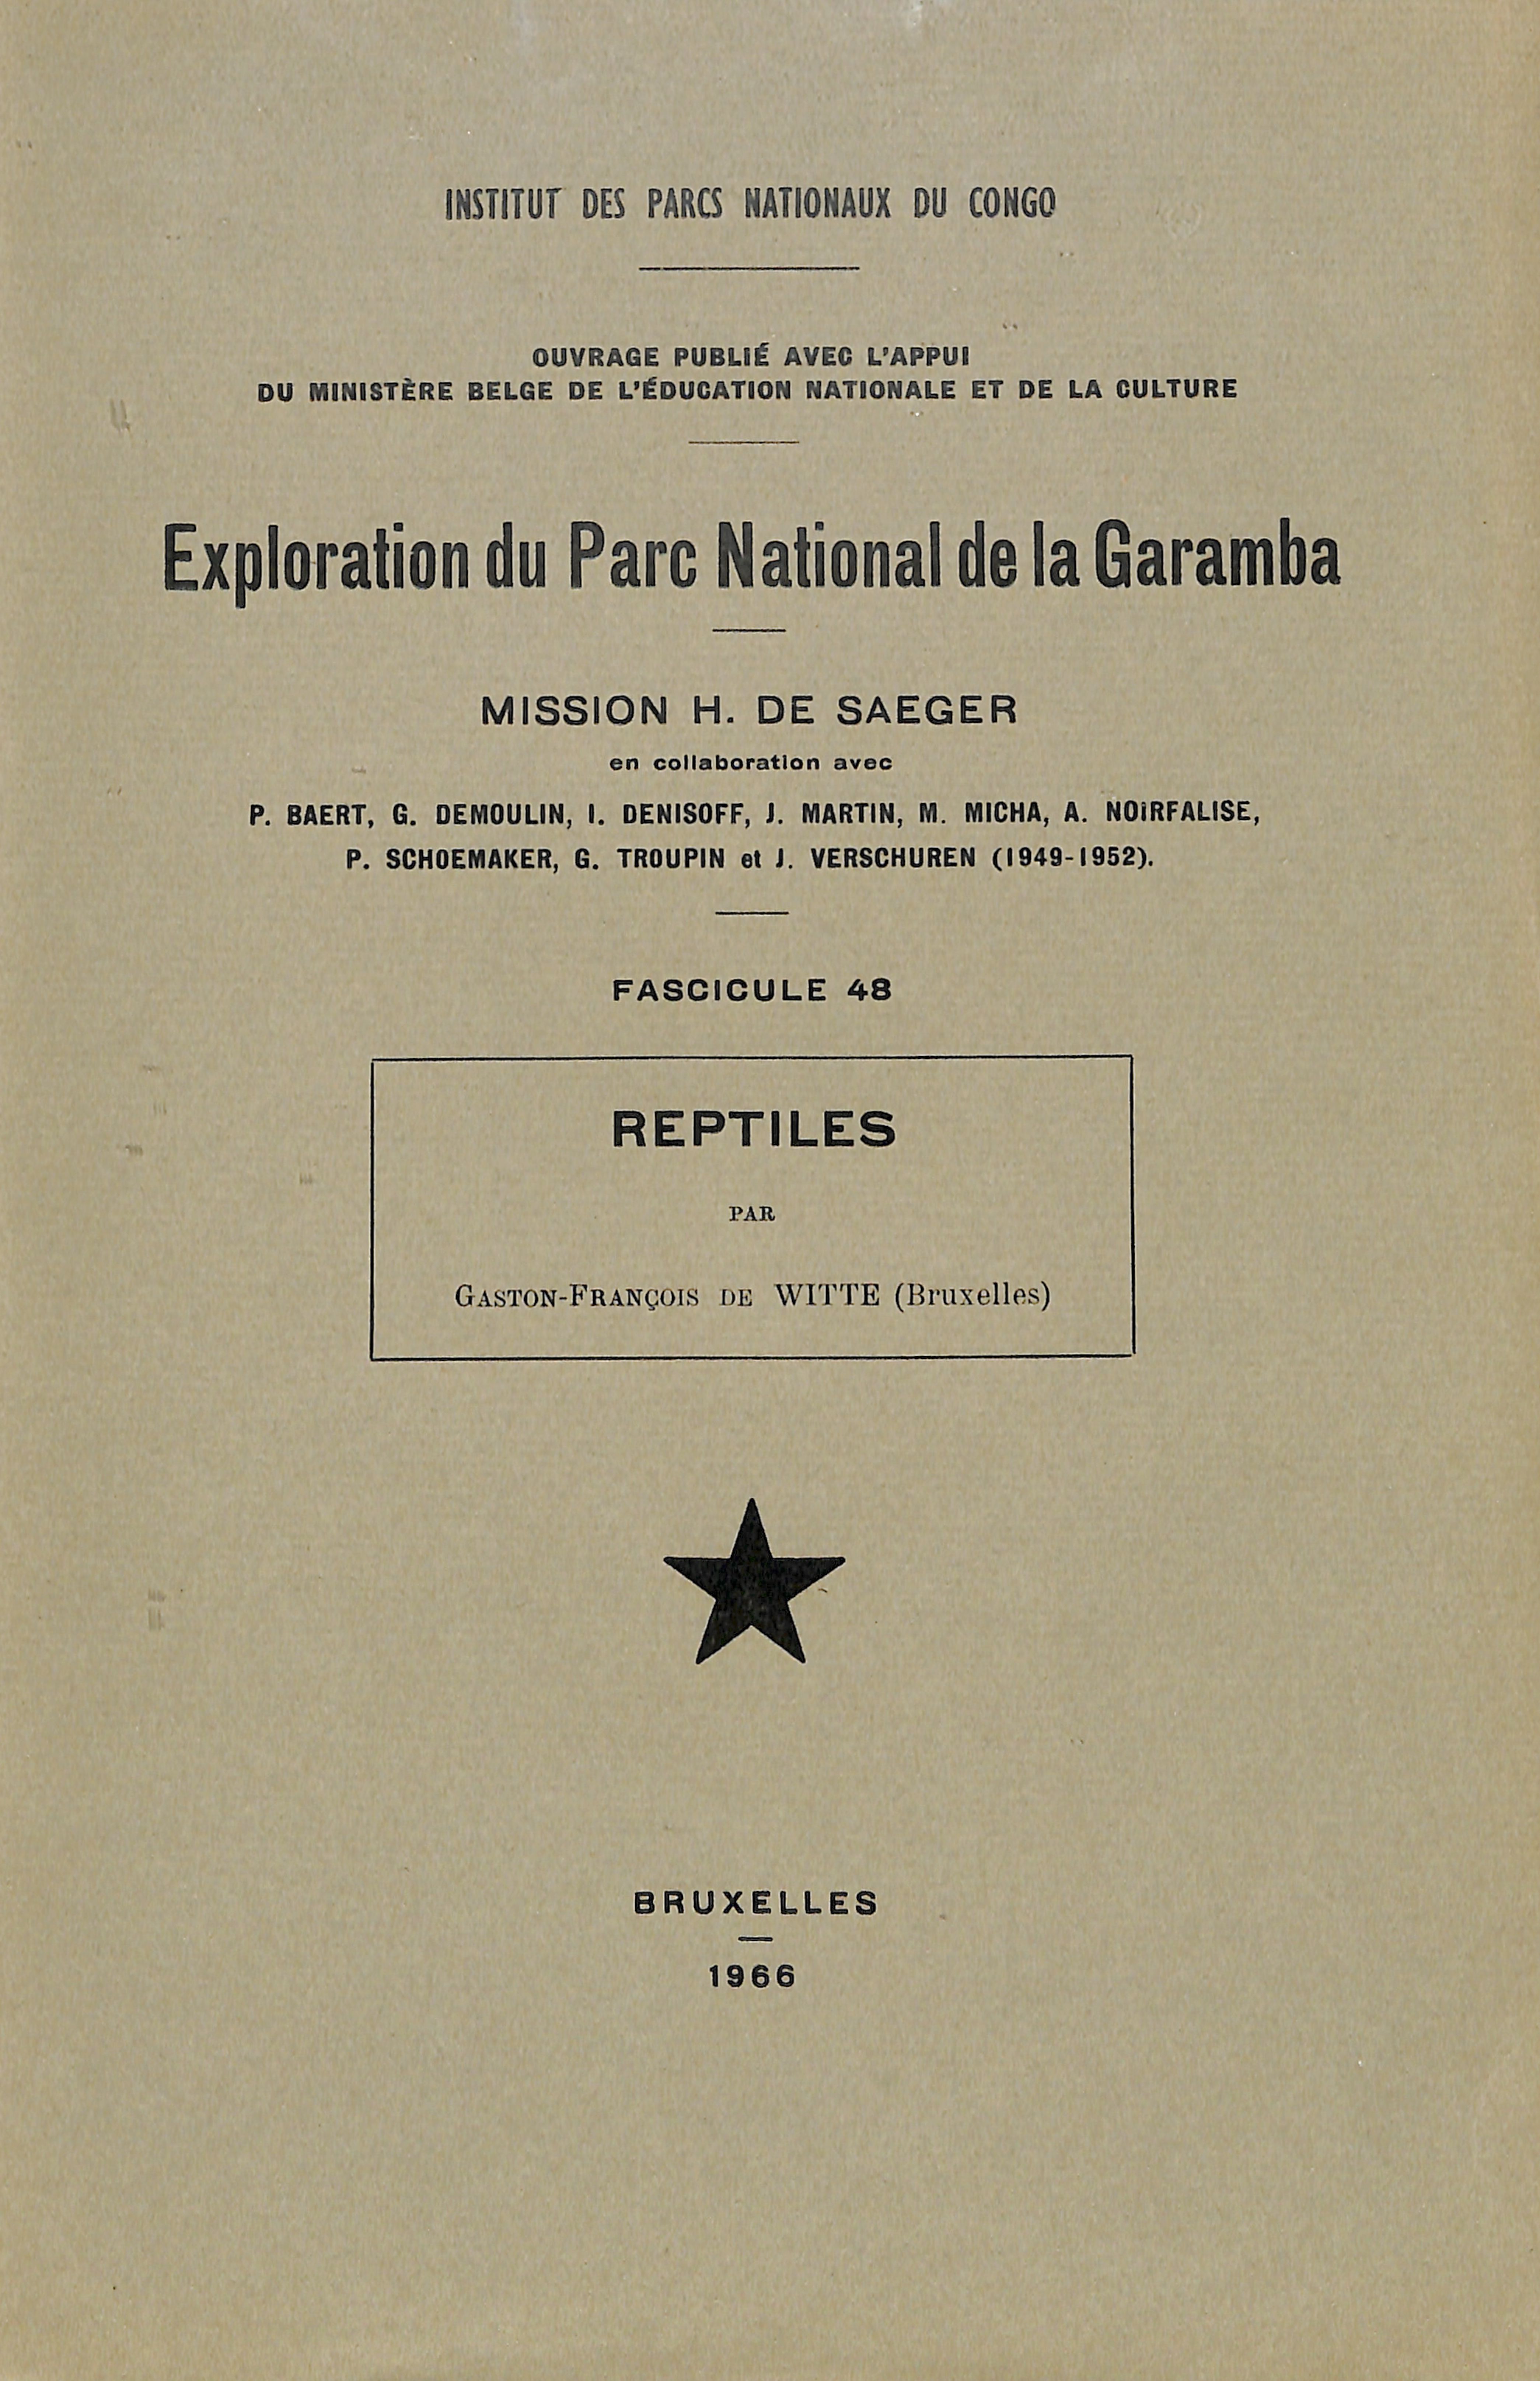 Garamba 1966-48.jpg